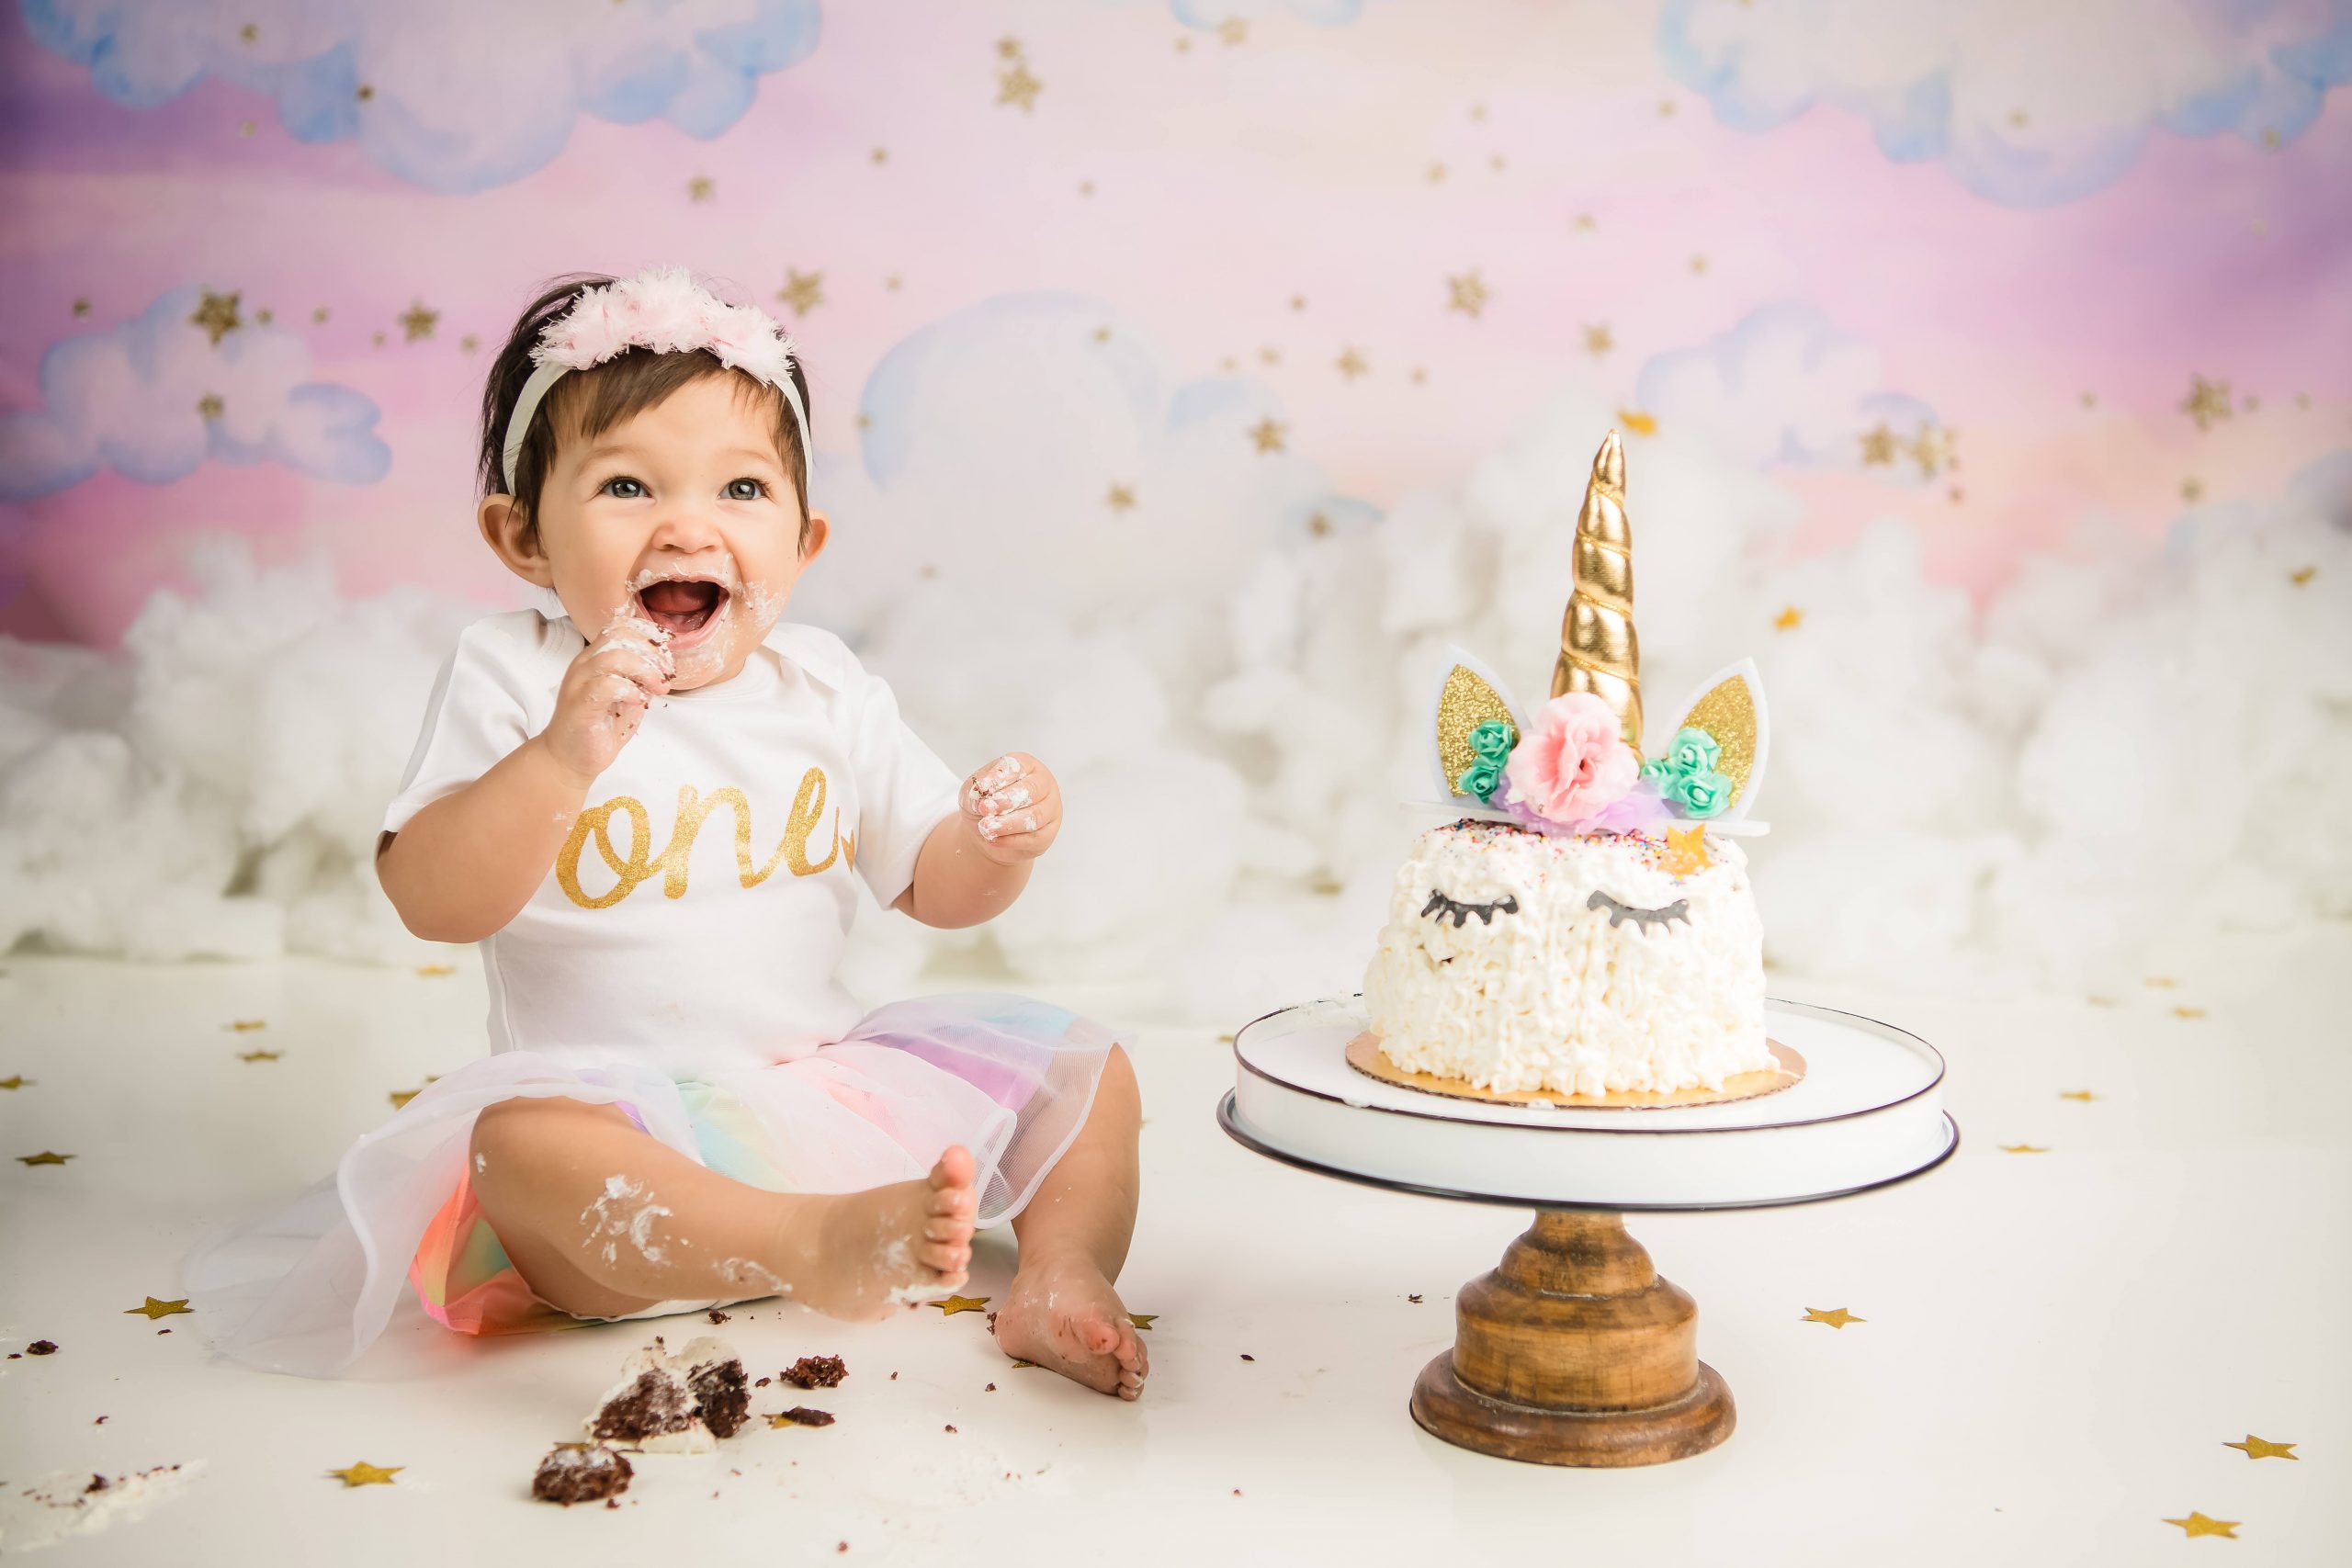 Kailene Jones Cake Smash 1012 scaled - Cake Smash - 1st Birthday